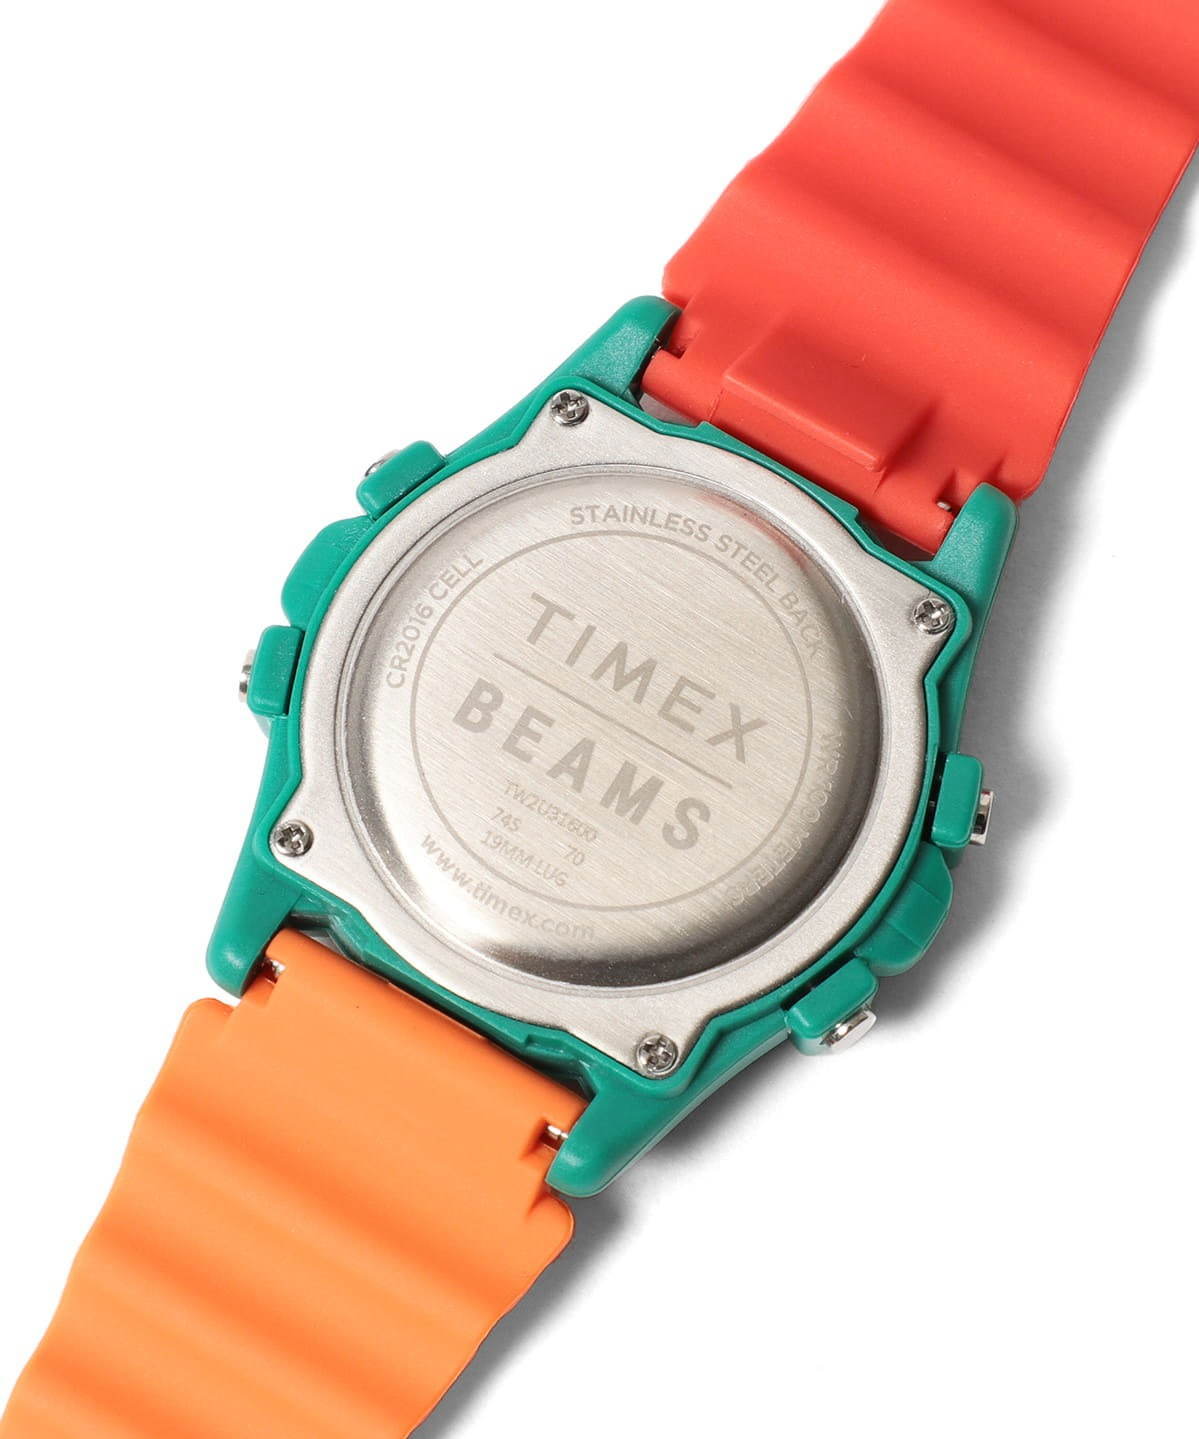 ビームスがタイメックスの腕時計「アトランティス 100」別注